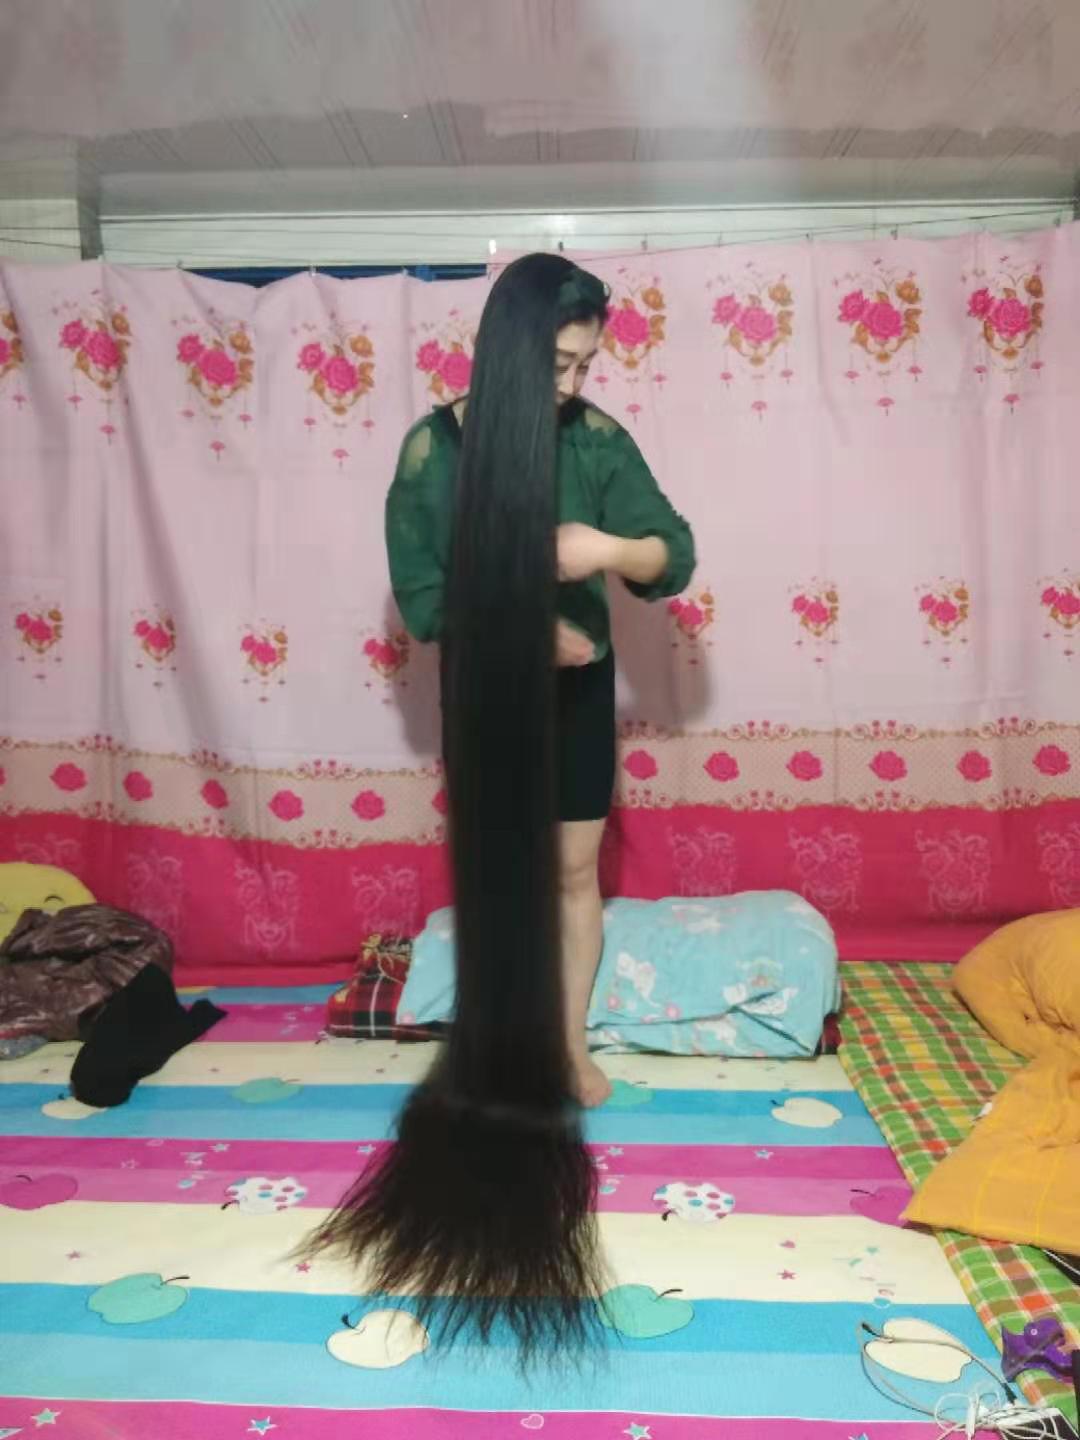 2 meters long hair on bed